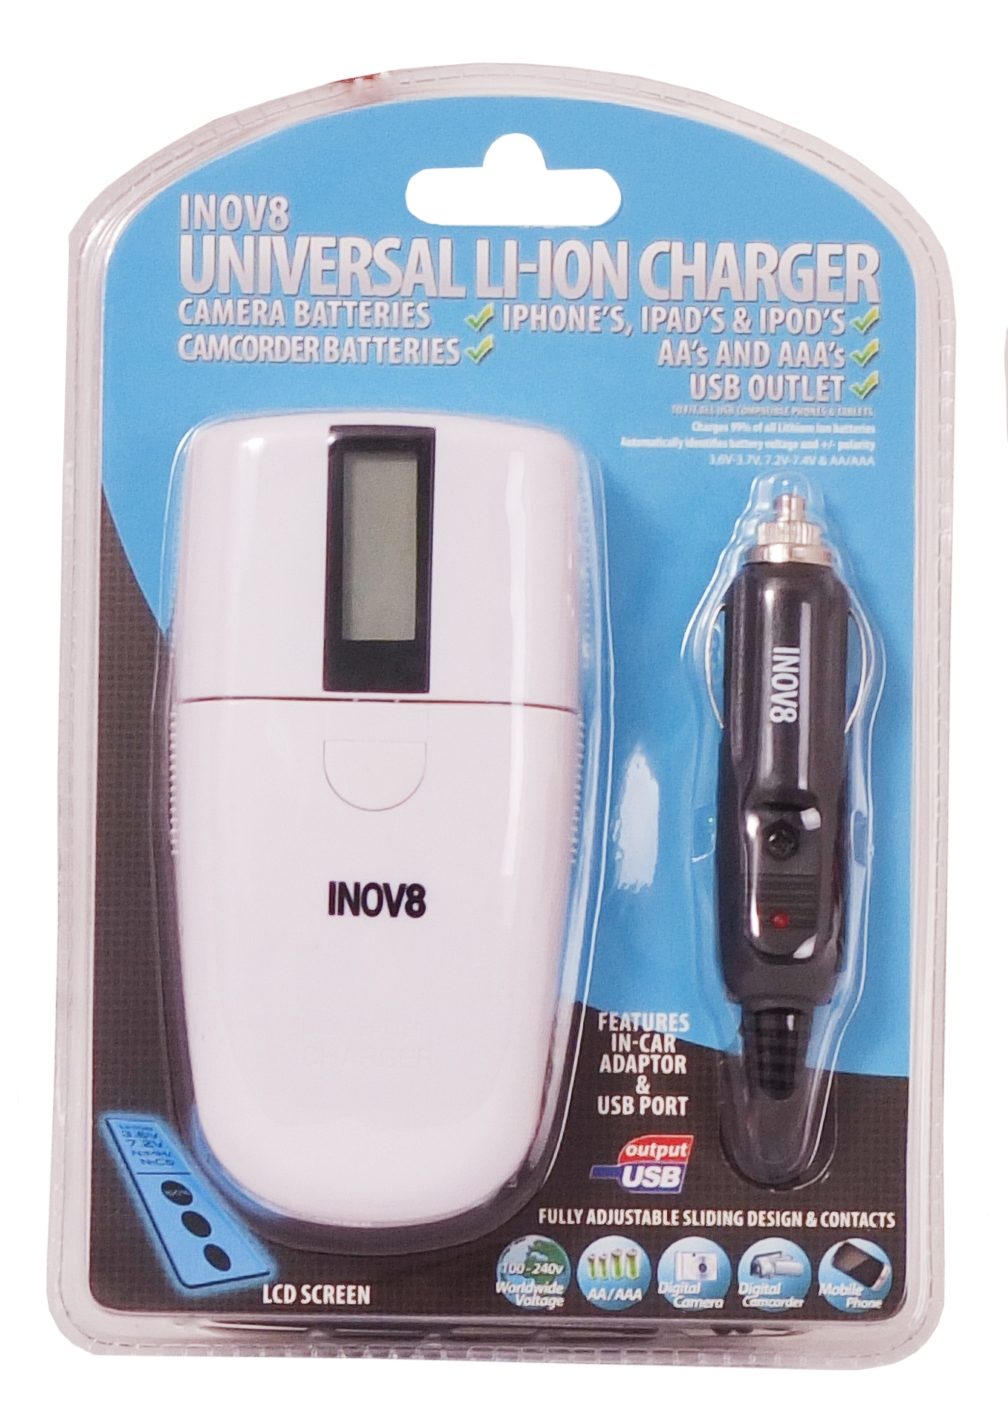 Inov8 Universal Li-ion Charger with USB